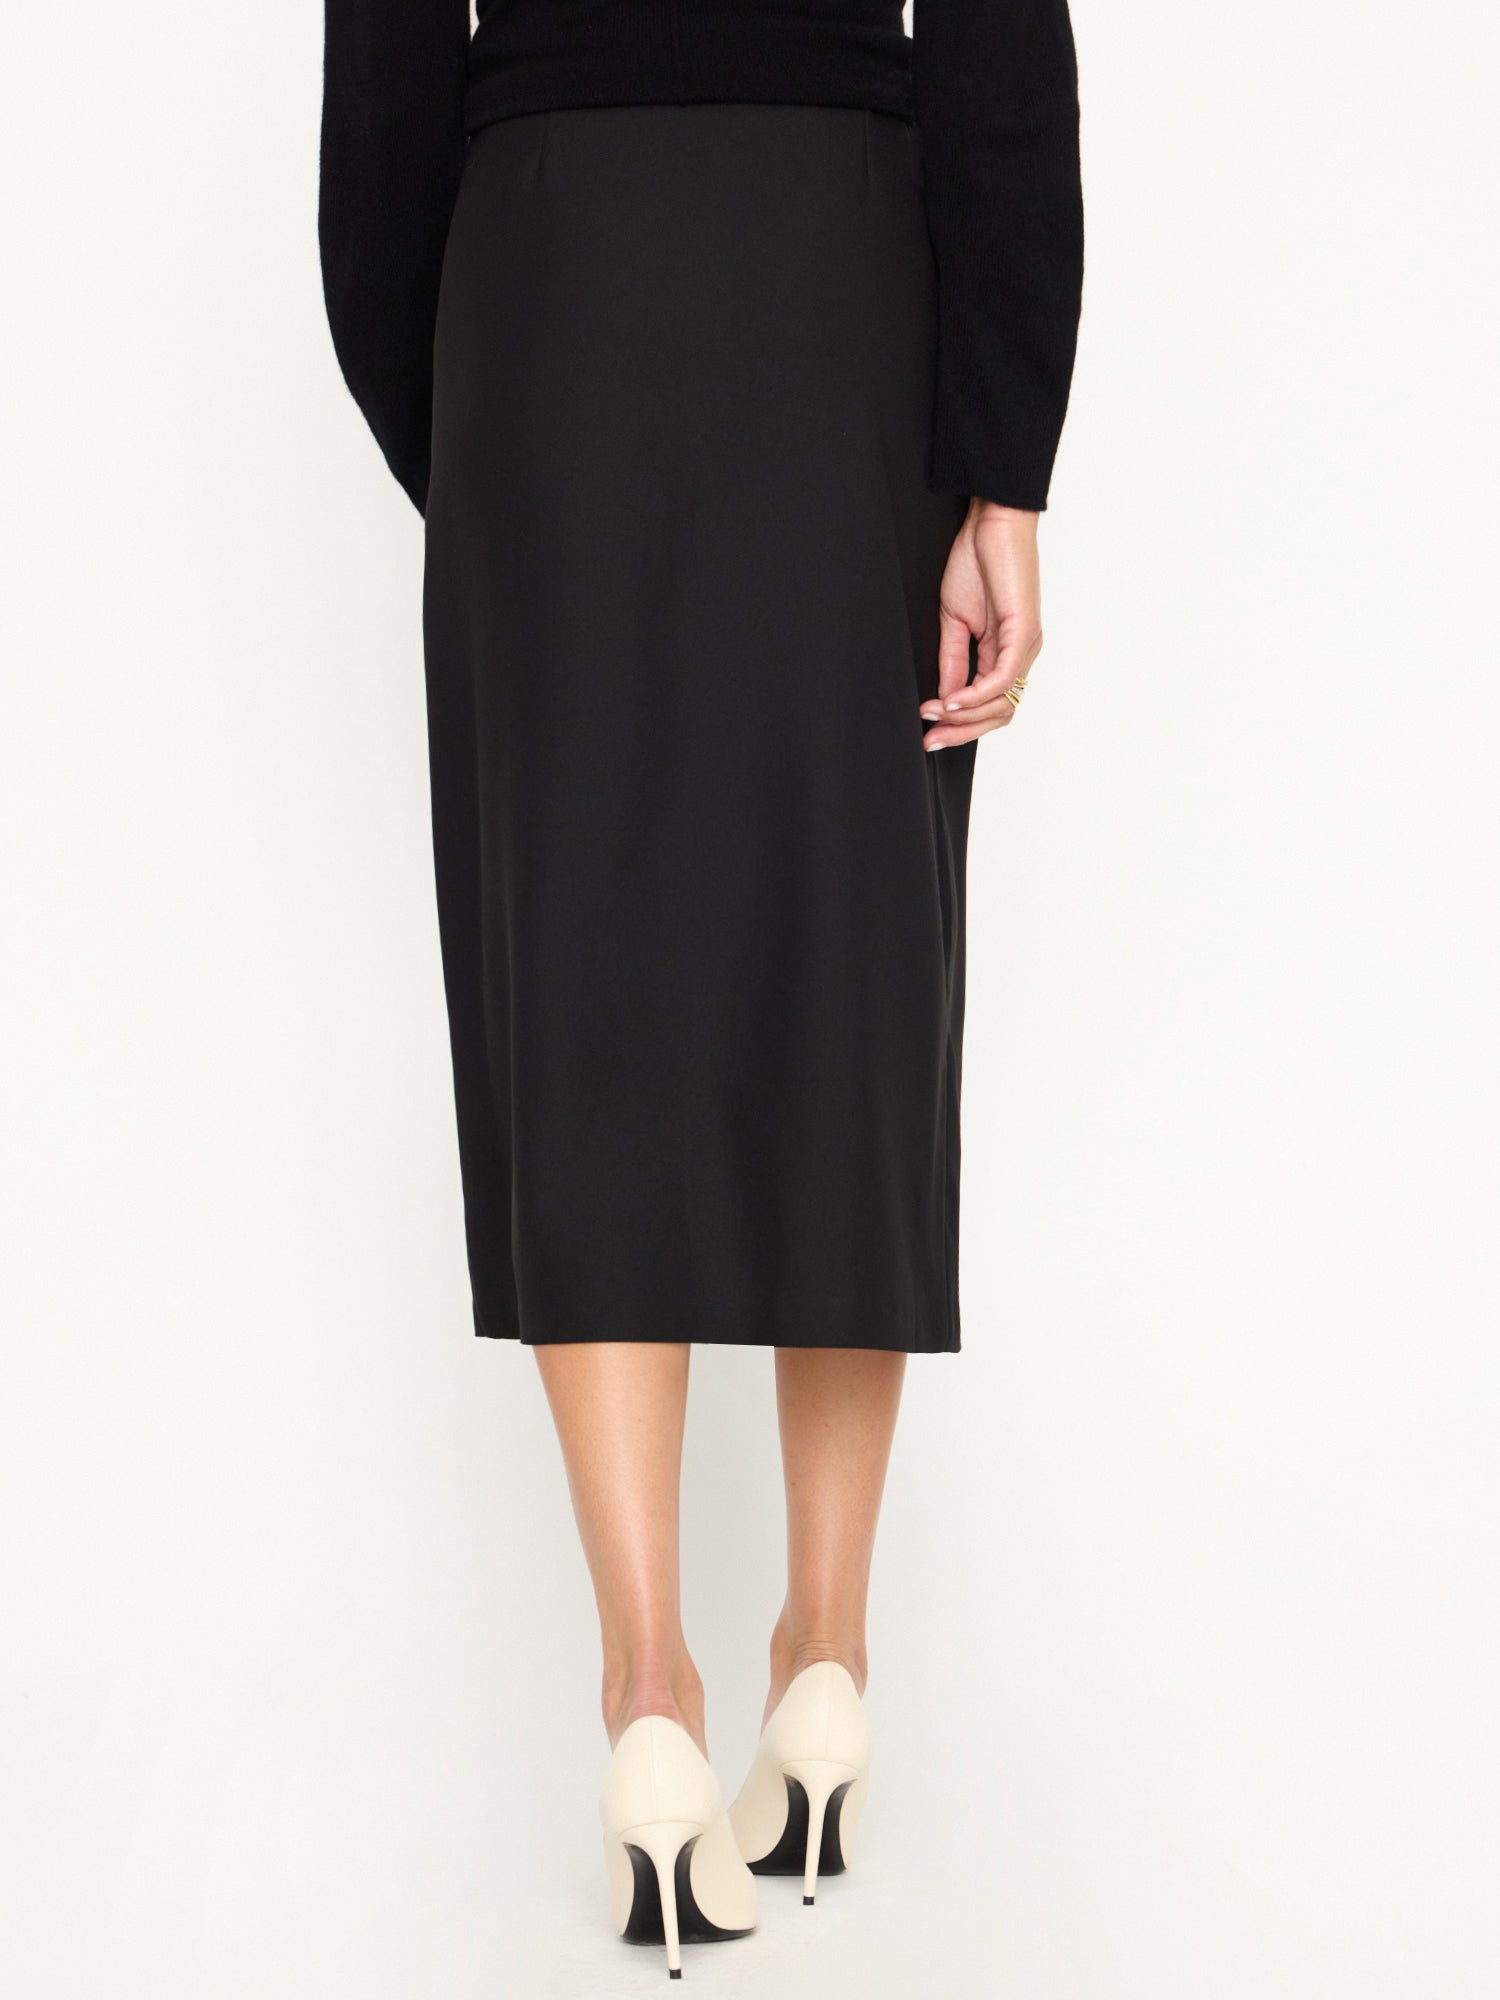 Women's Camille Skirt in Black Onyx